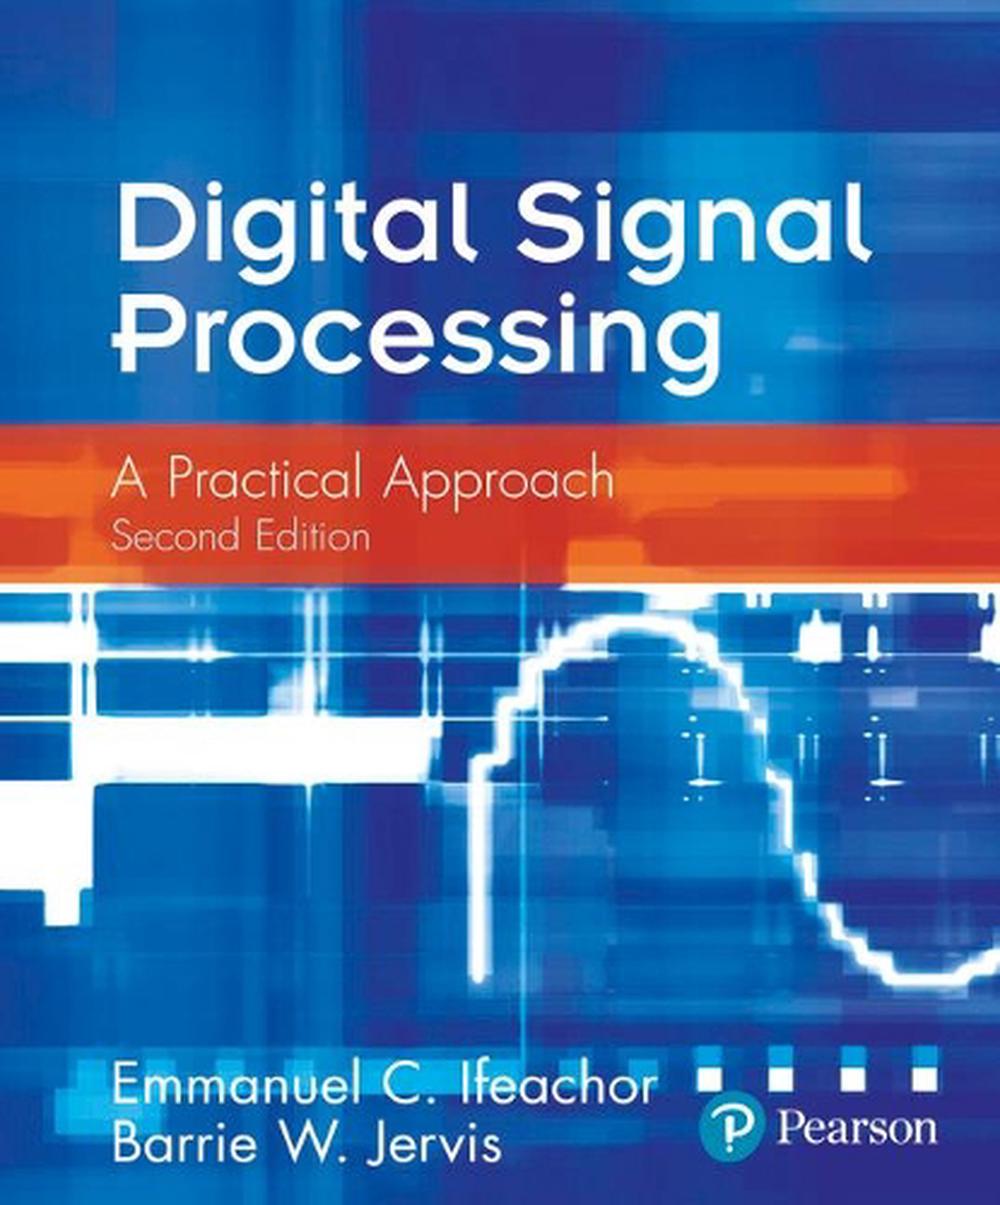 Digital Signal Processing A Practical Approach by Emmanuel C. Ifeachor